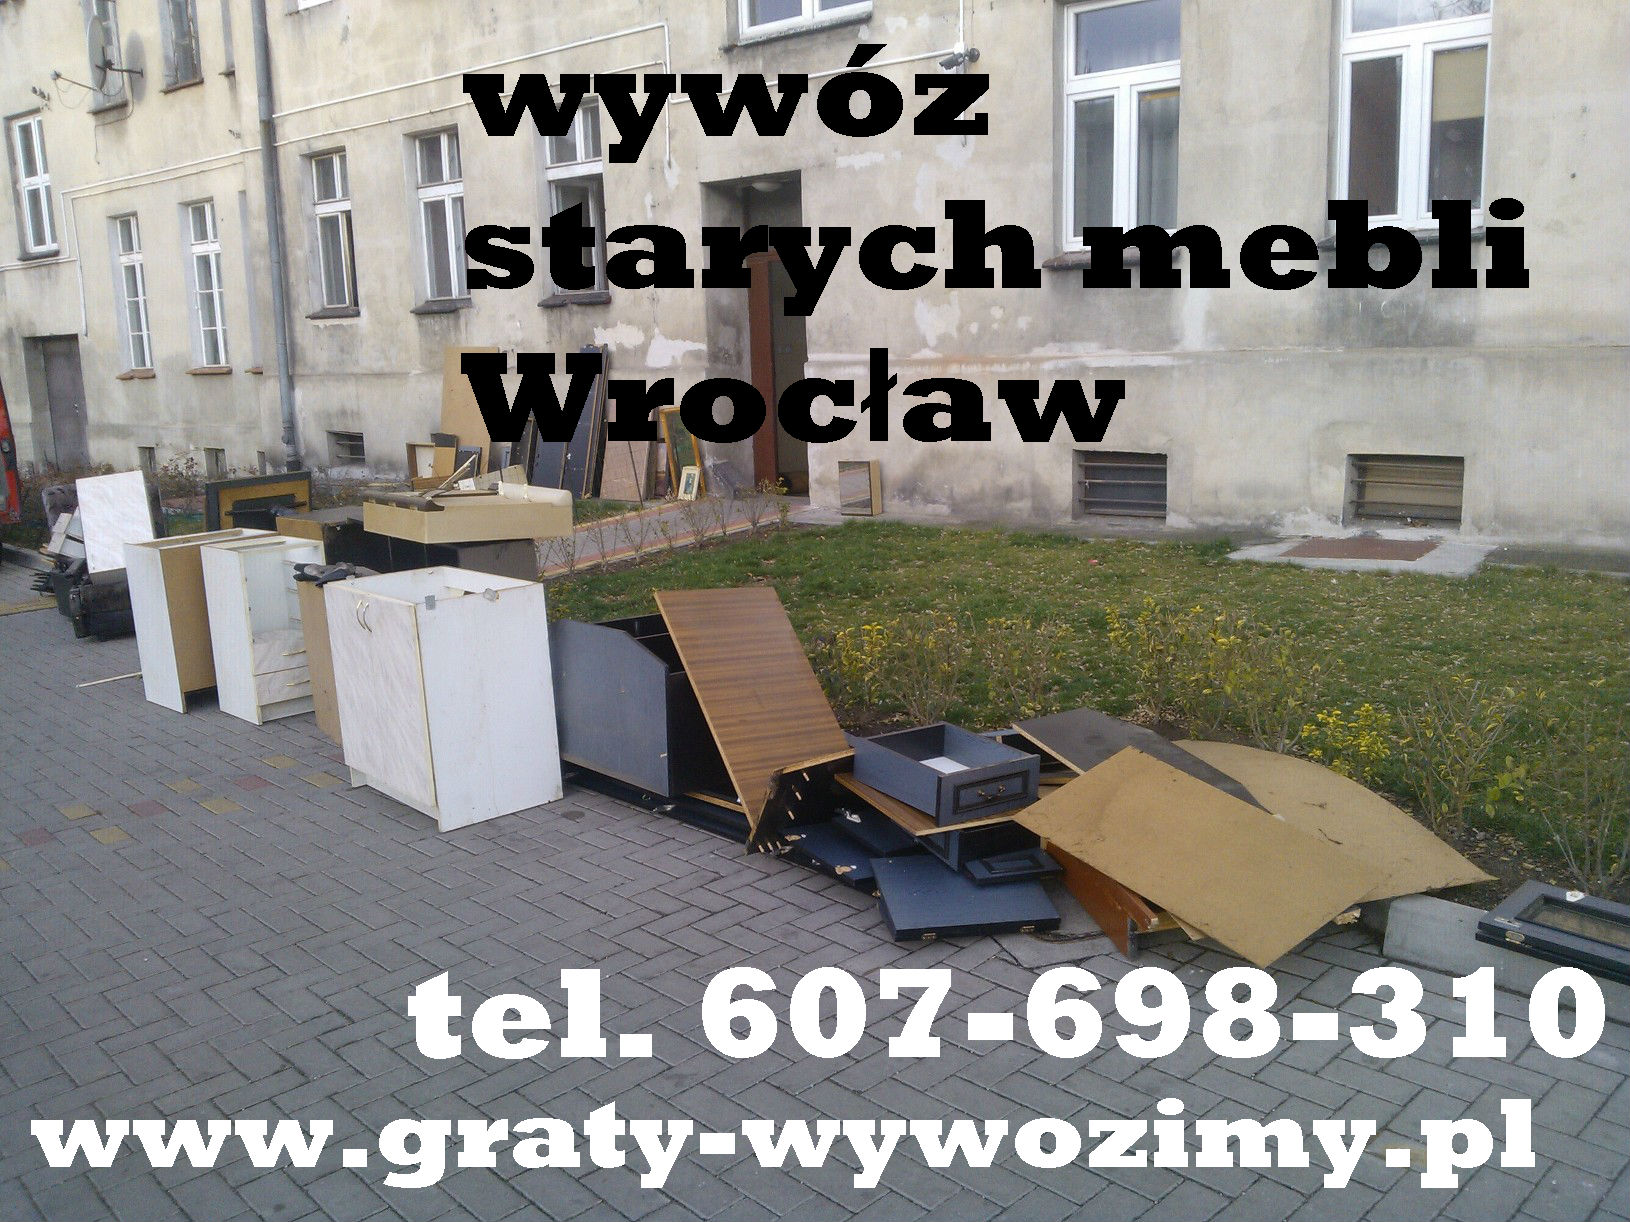 Wywóz starych mebli Wrocław